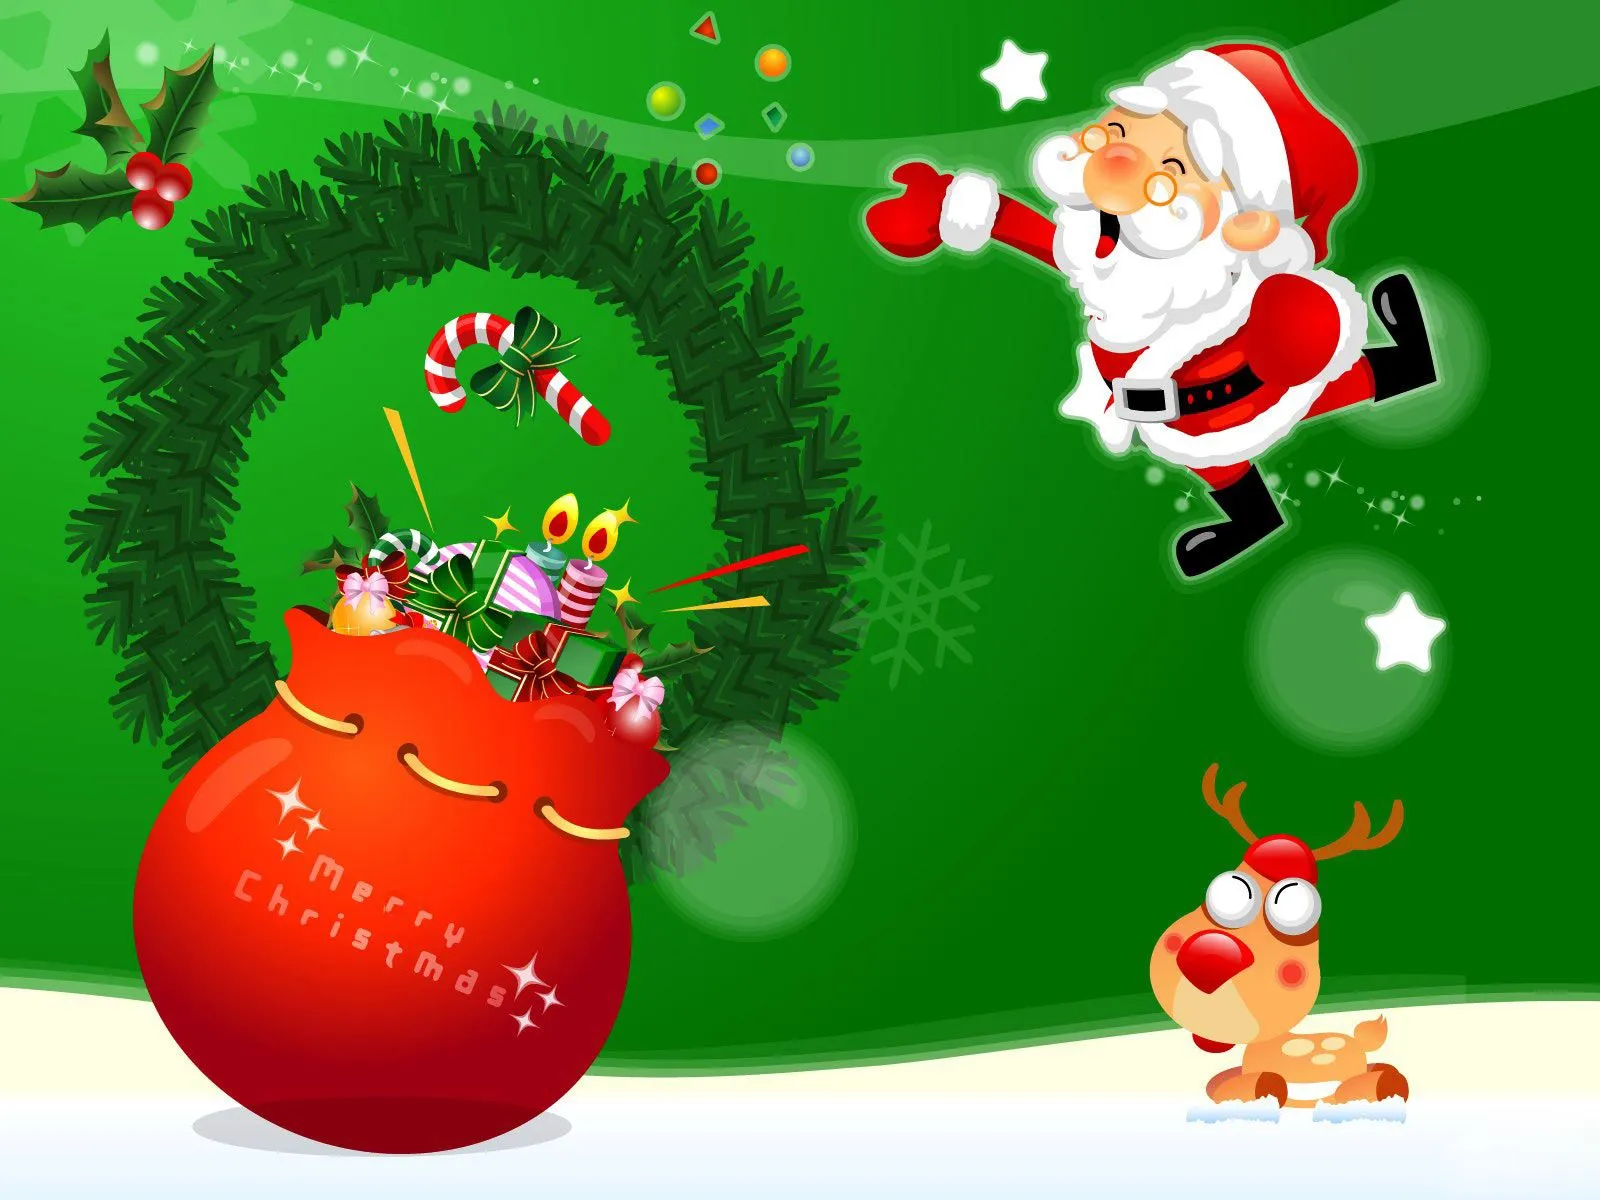 Coleccionando Gifs animados: Navidad Postales navideñas